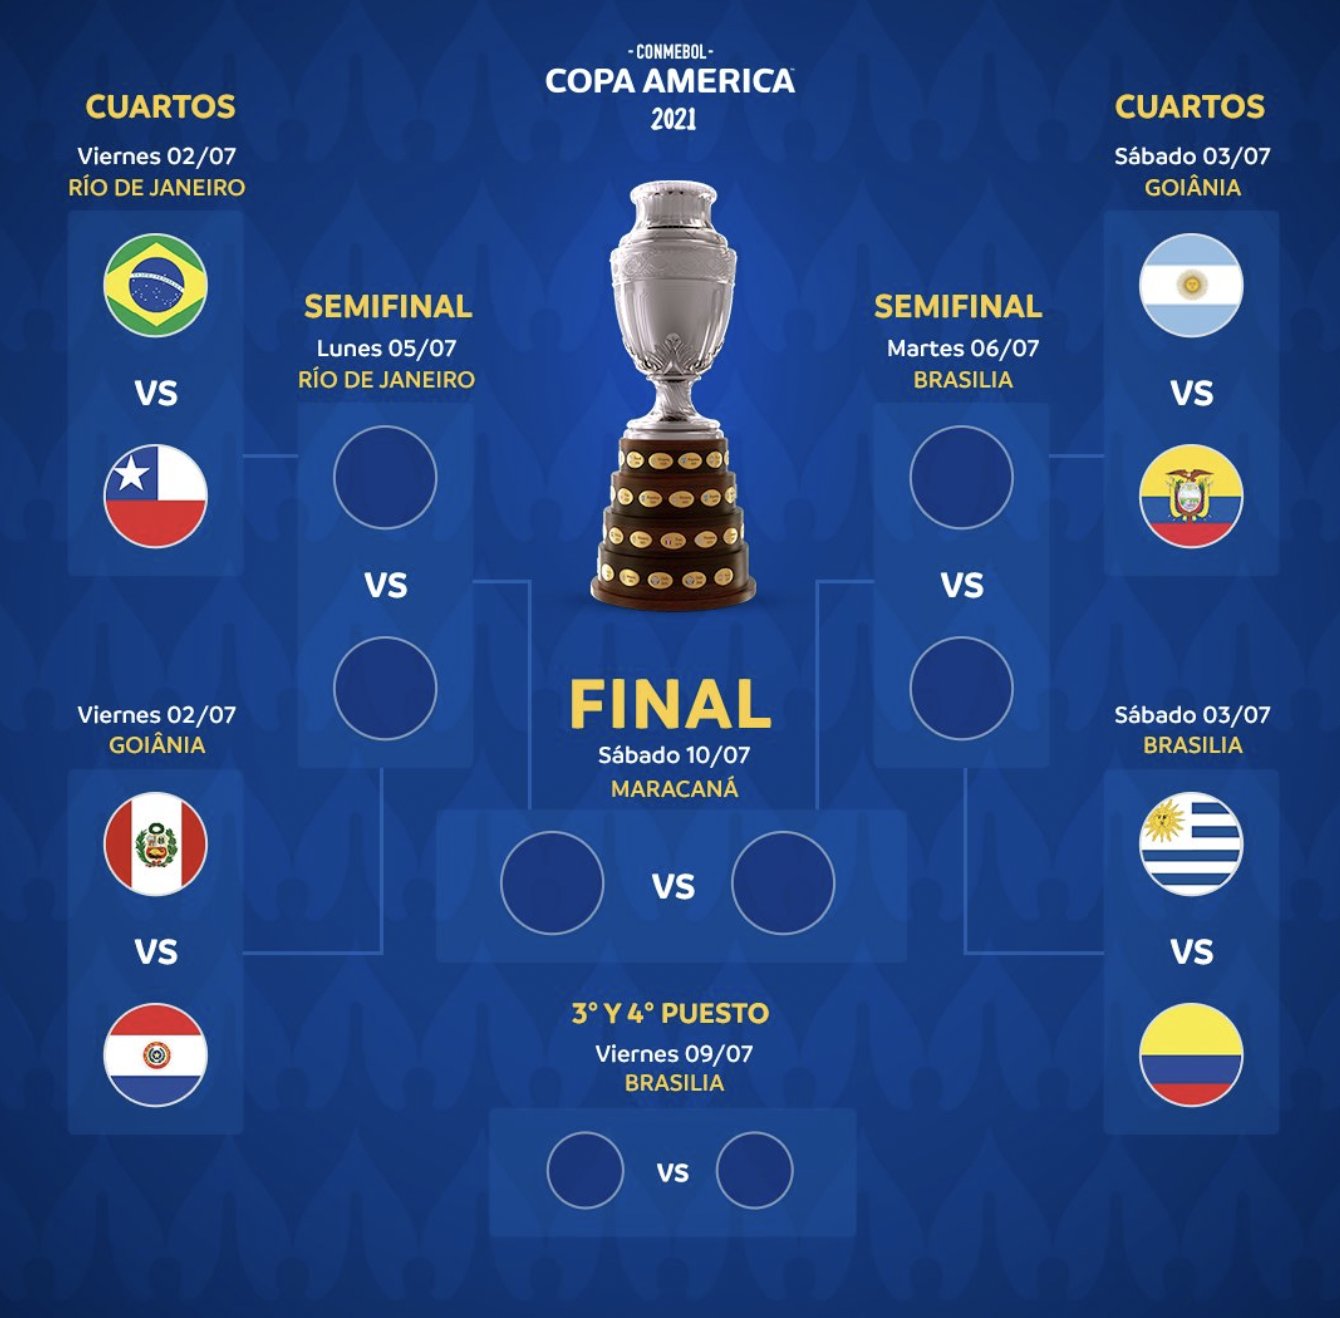 Lịch thi đấu tứ kết Copa America 2021 mới nhất, lịch phát sóng trực tiếp Copa 2021 theo giờ Việt Nam